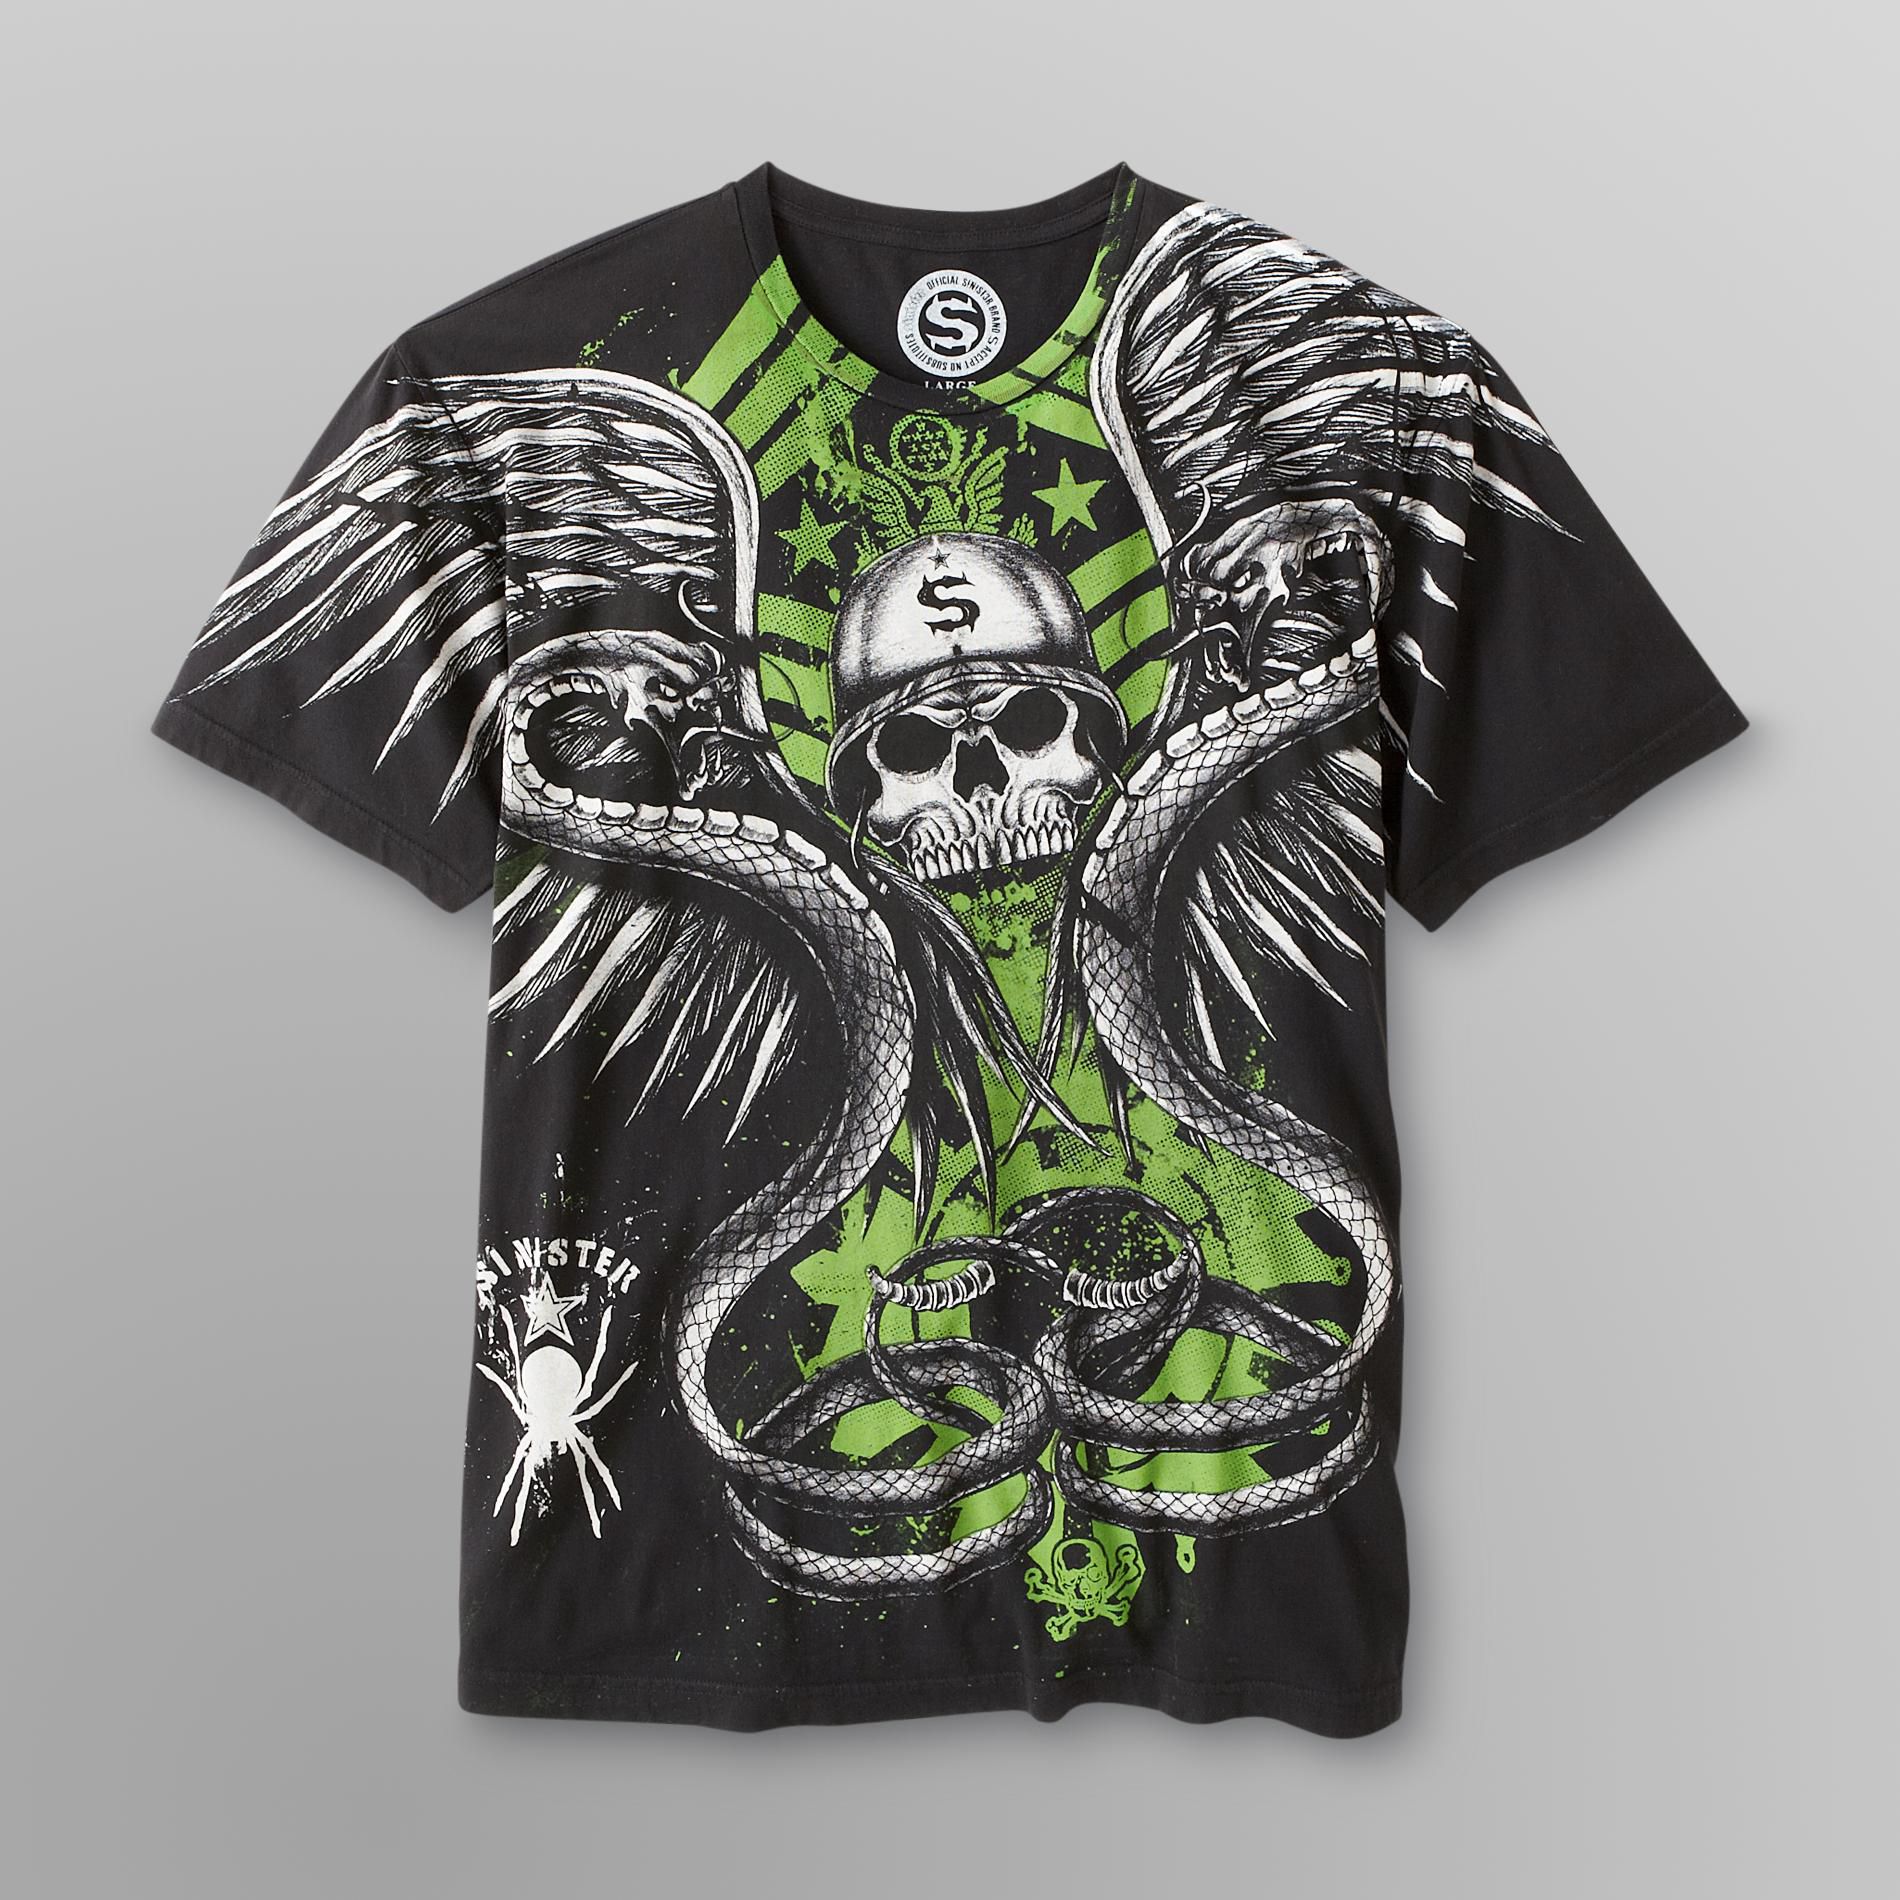 Sinister Men's Graphic T-Shirt - Snake Skull